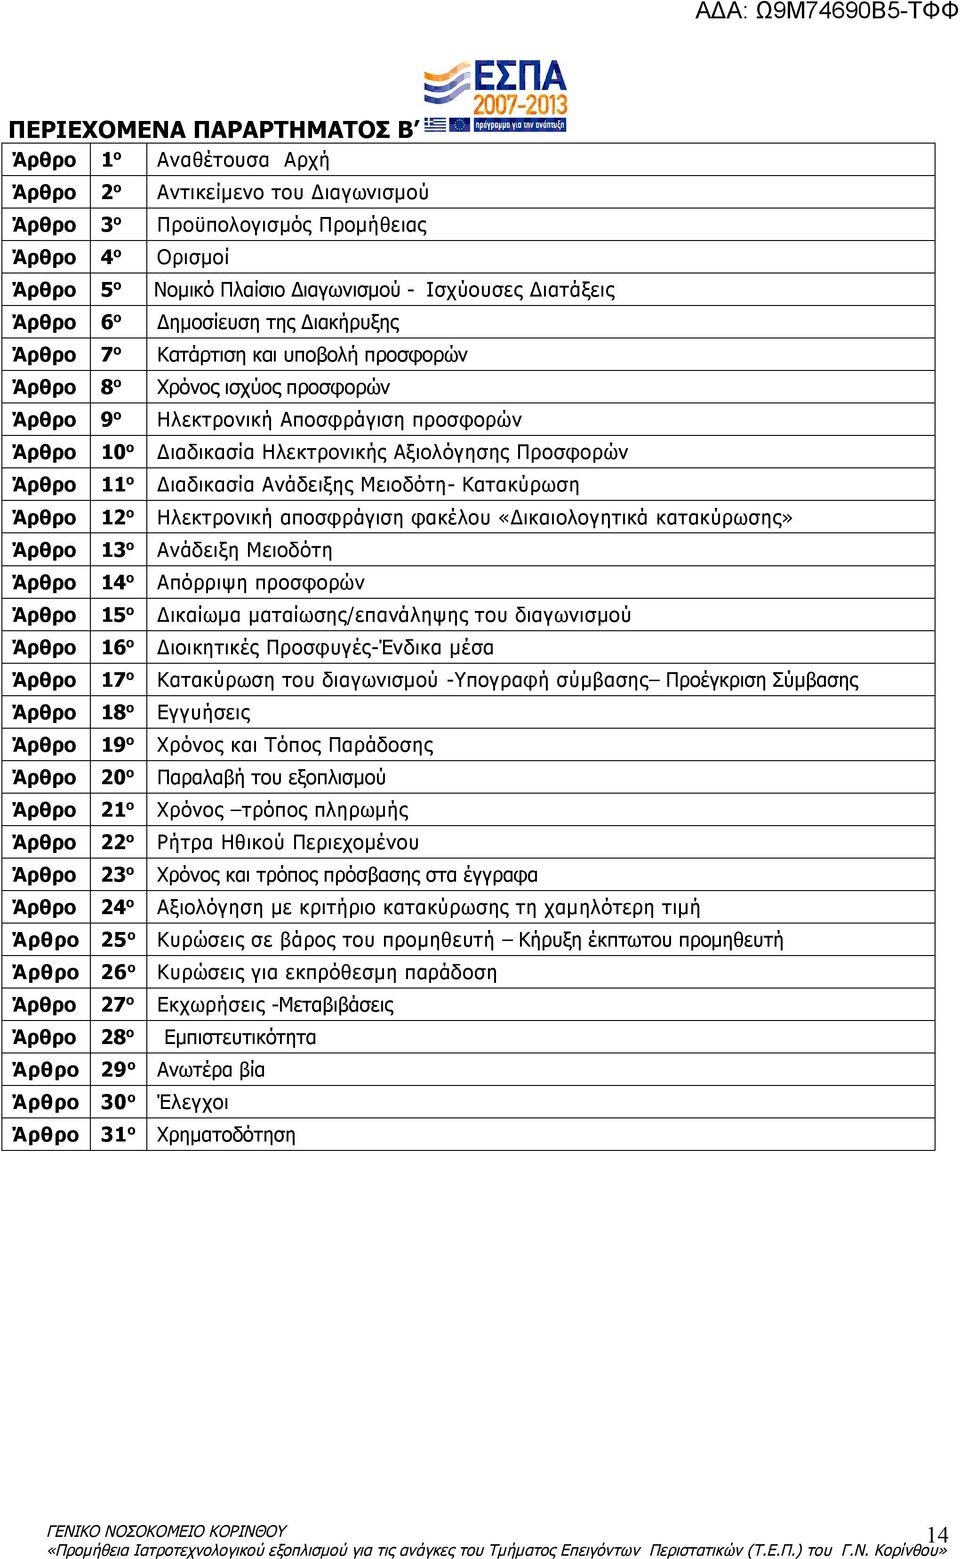 Ηλεκτρονικής Αξιολόγησης Προσφορών Άρθρο 11 ο Διαδικασία Ανάδειξης Μειοδότη- Κατακύρωση Άρθρο 12 ο Ηλεκτρονική αποσφράγιση φακέλου «Δικαιολογητικά κατακύρωσης» Άρθρο 13 ο Ανάδειξη Μειοδότη Άρθρο 14 ο